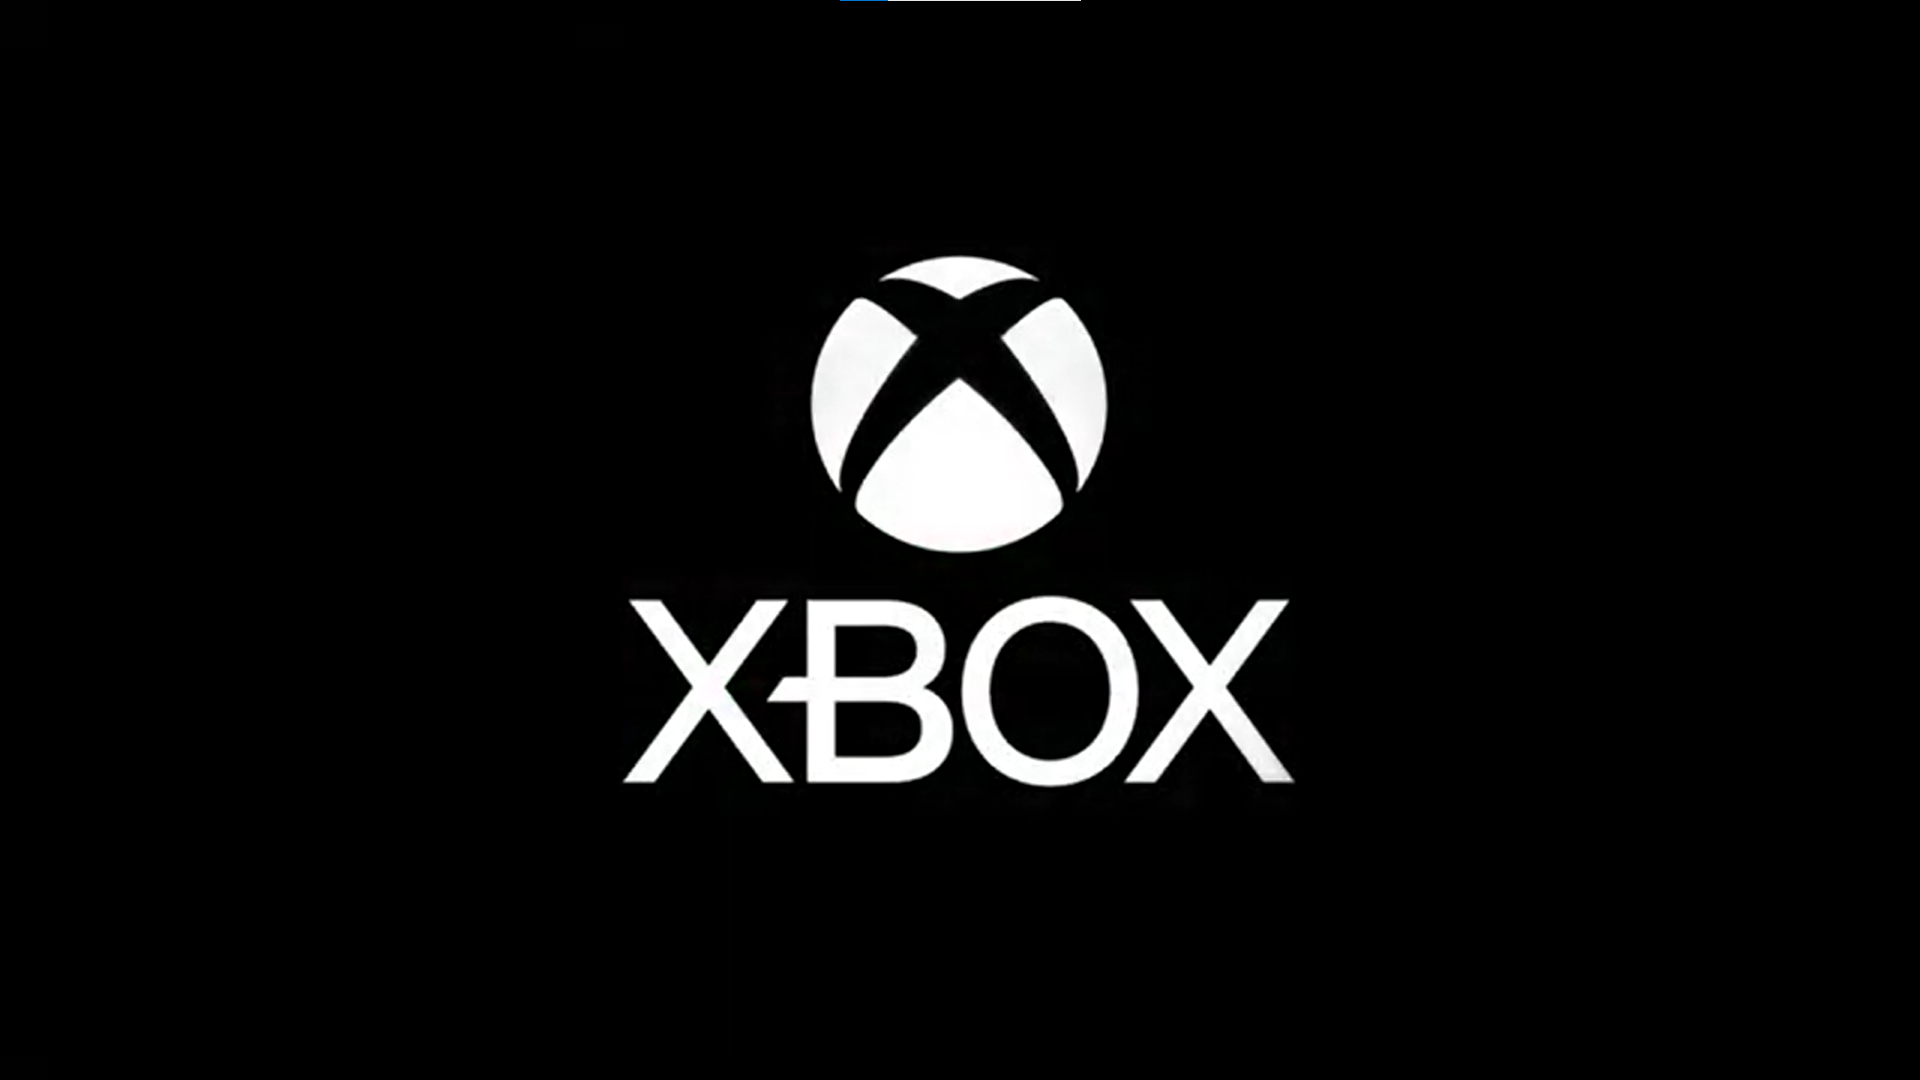 rechtop Overtekenen Uitgaand Problemen met systeemupdates op Xbox oplossen | Xbox Support